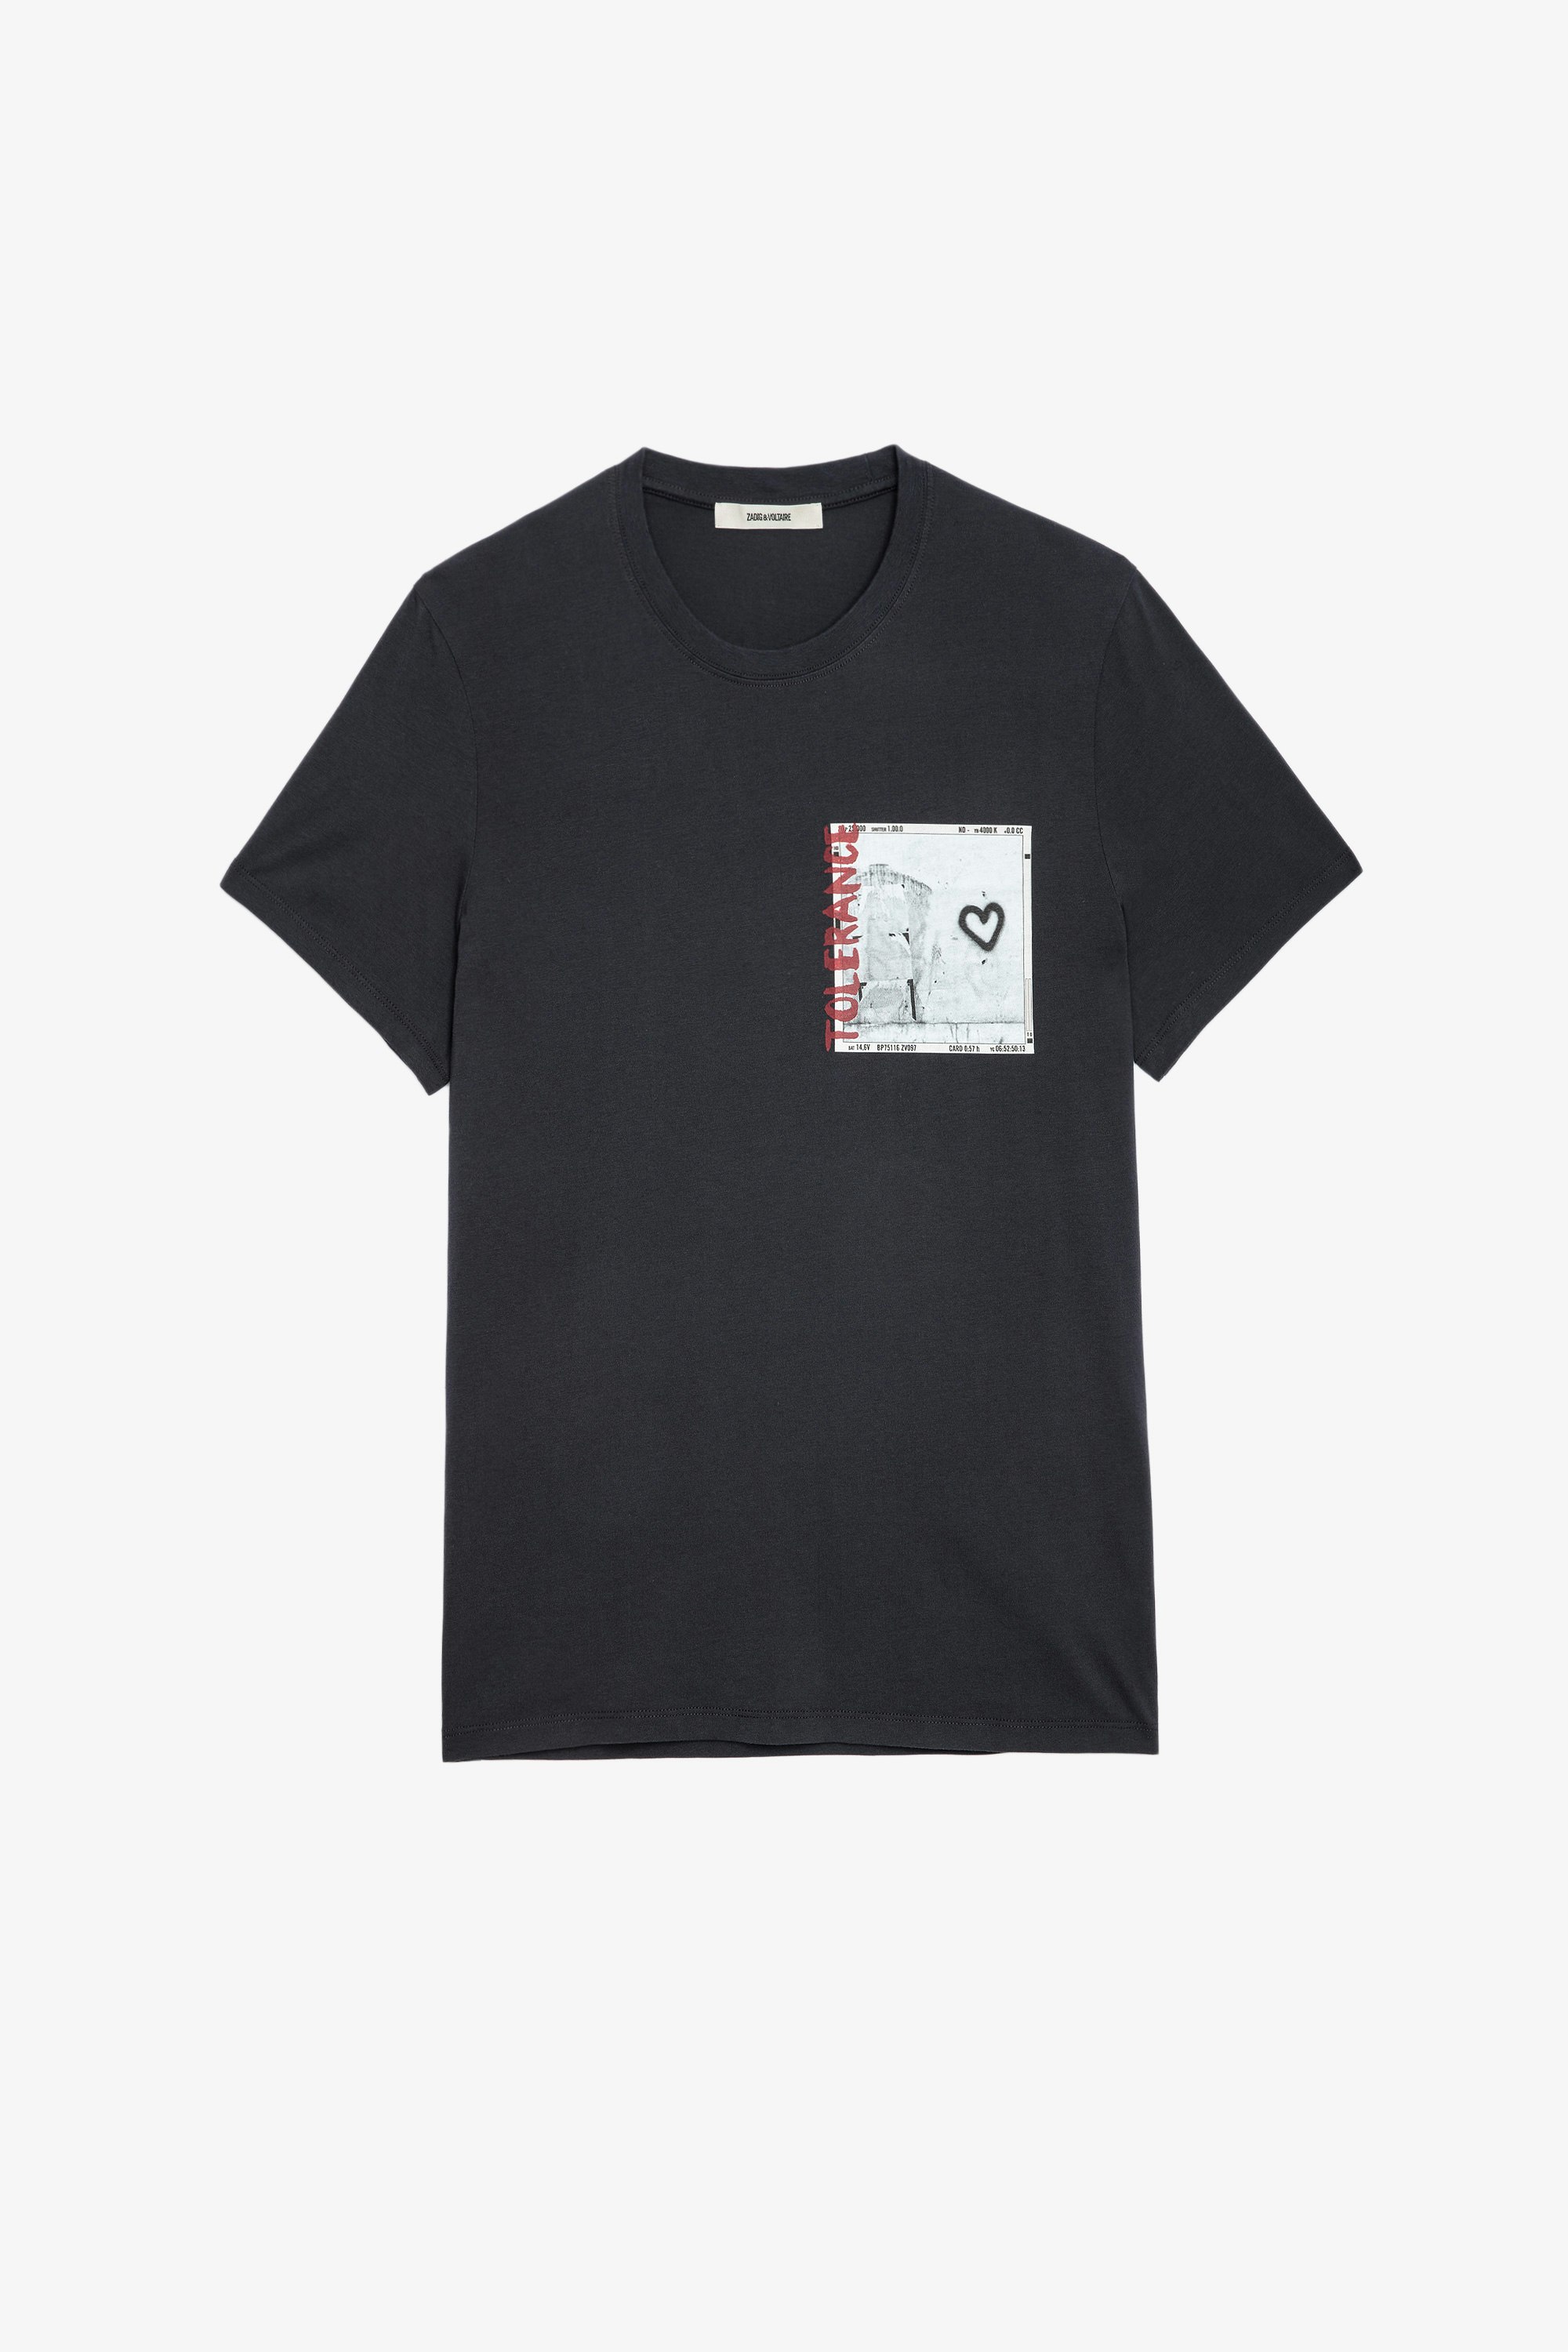 Camiseta Ted Photoprint Camiseta gris de algodón con impresión fotográfica para hombre